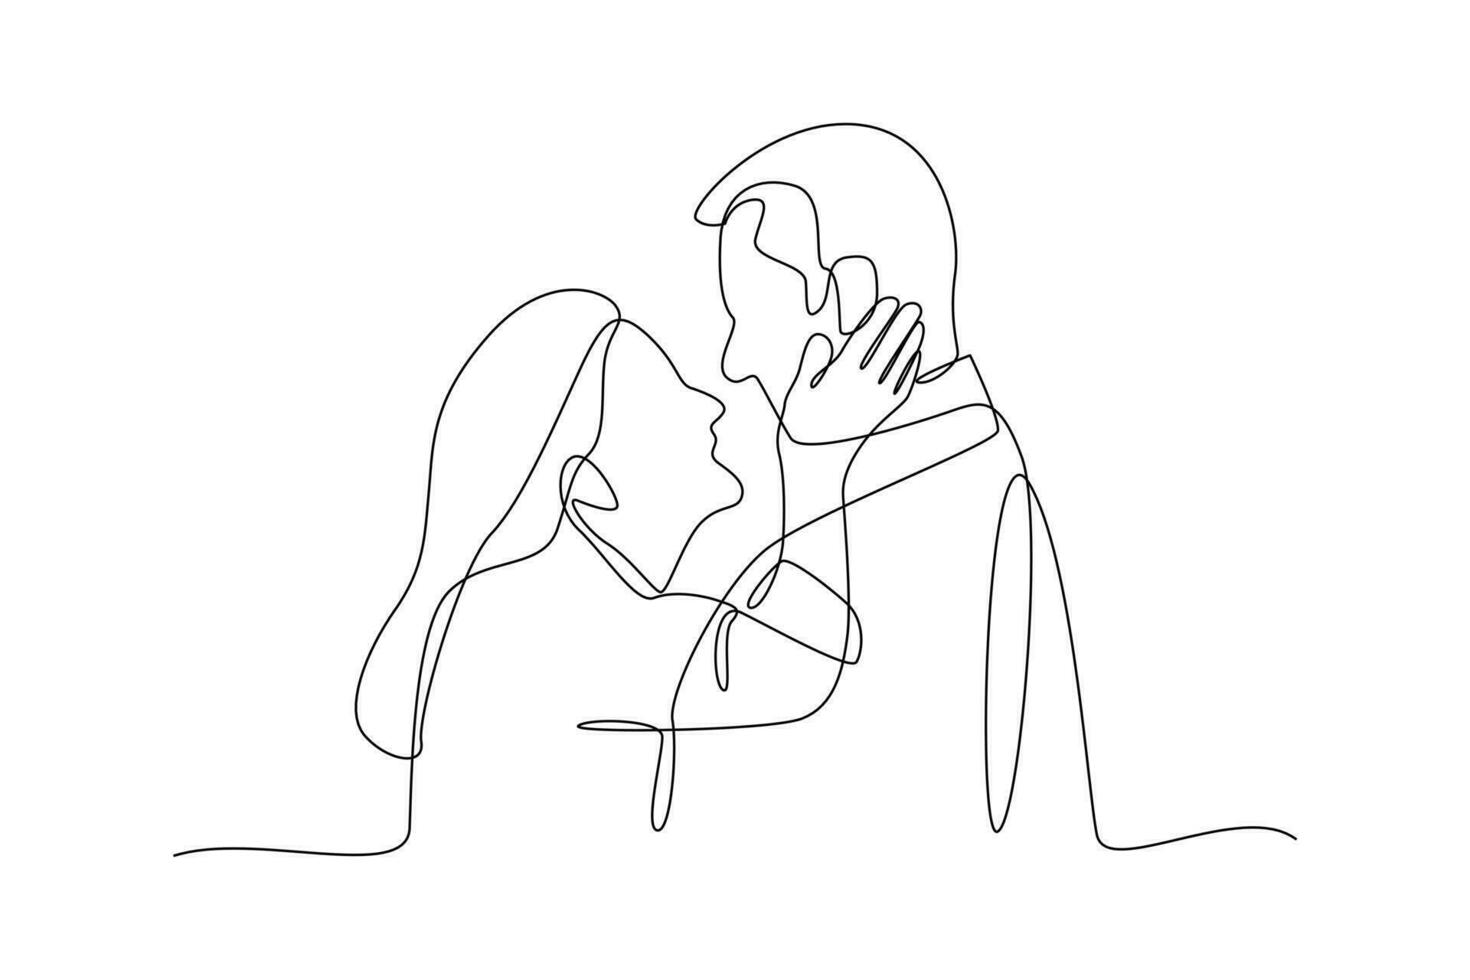 doorlopend een lijn tekening gelukkig grootouders knuffelen. grootouder dag concept. single lijn tekening ontwerp grafisch vector illustratie